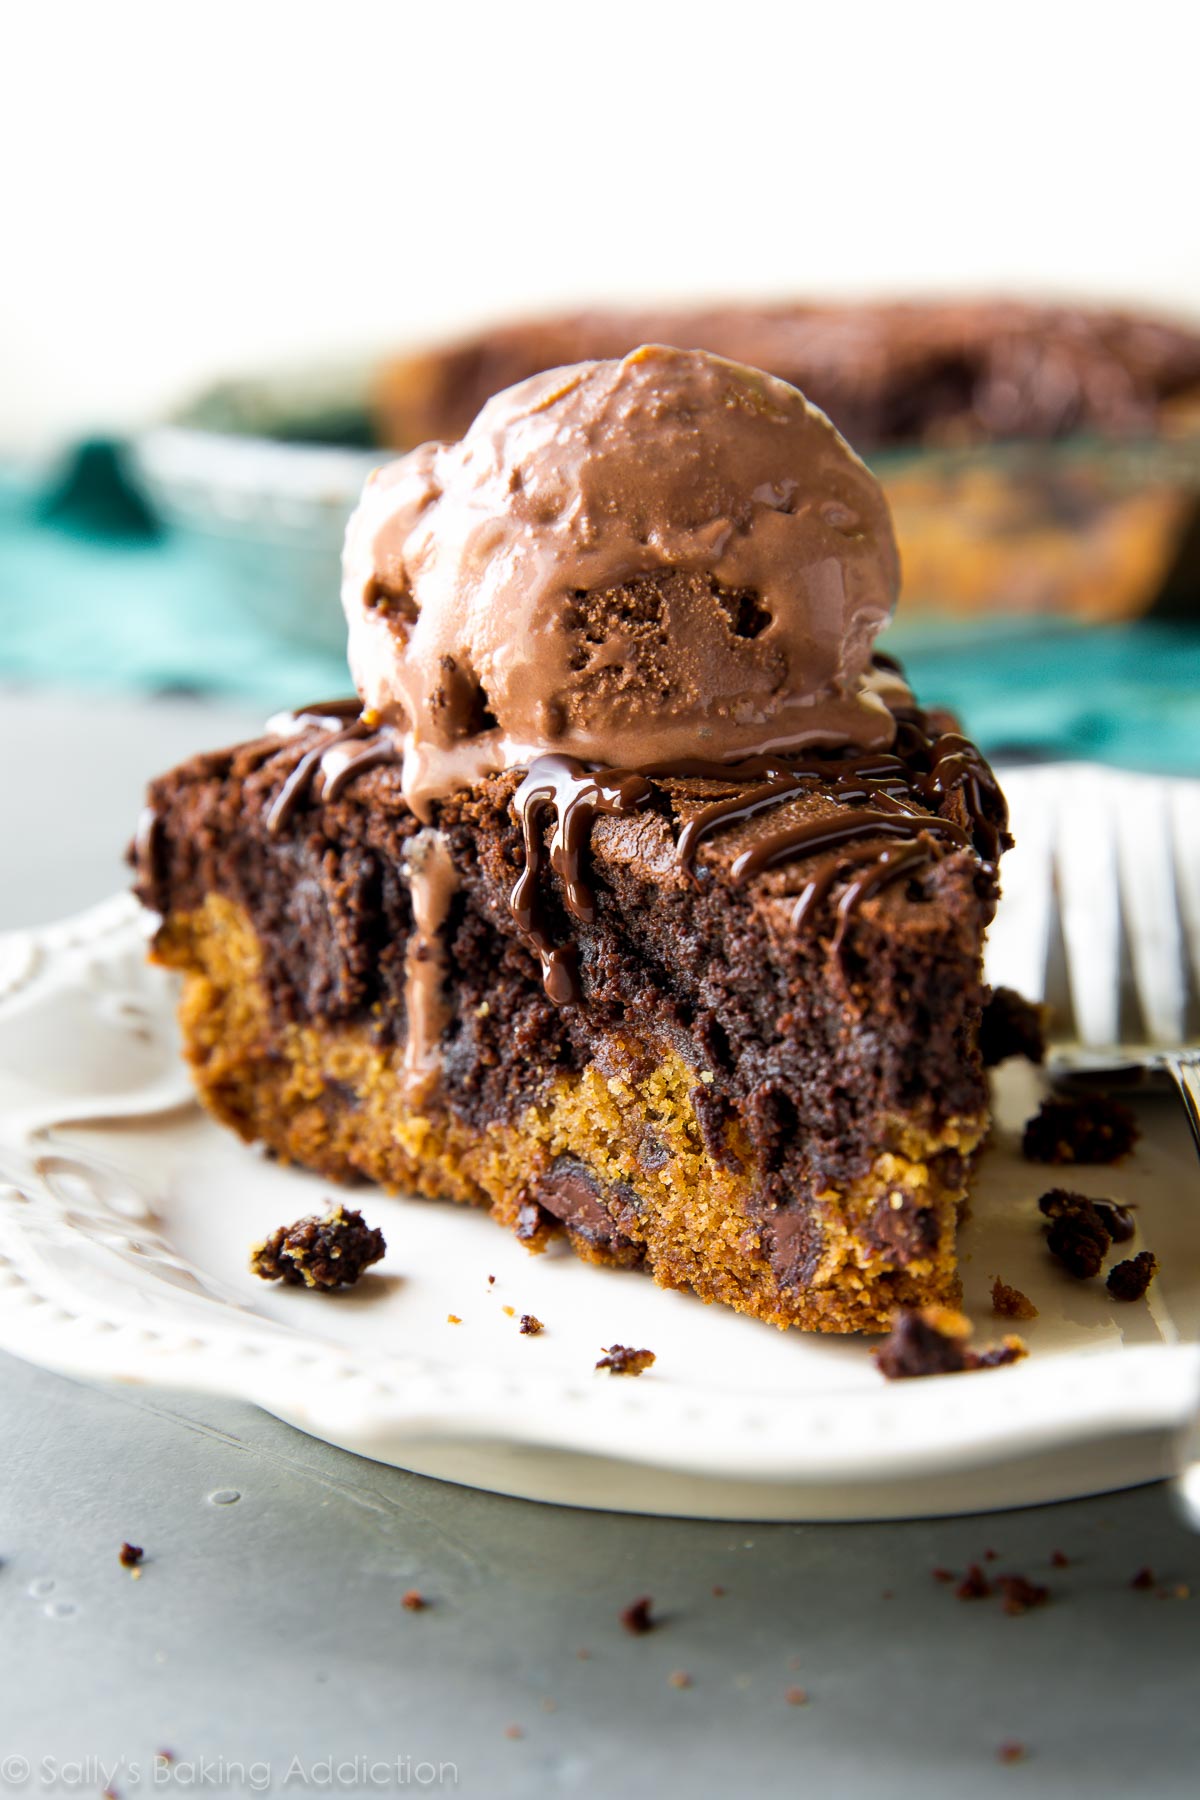 Si vous ne pouvez pas choisir entre des biscuits aux brisures de chocolat ou des brownies, ayez les deux dans ce brookie pie! Recette sur sallysbakingaddiction.com